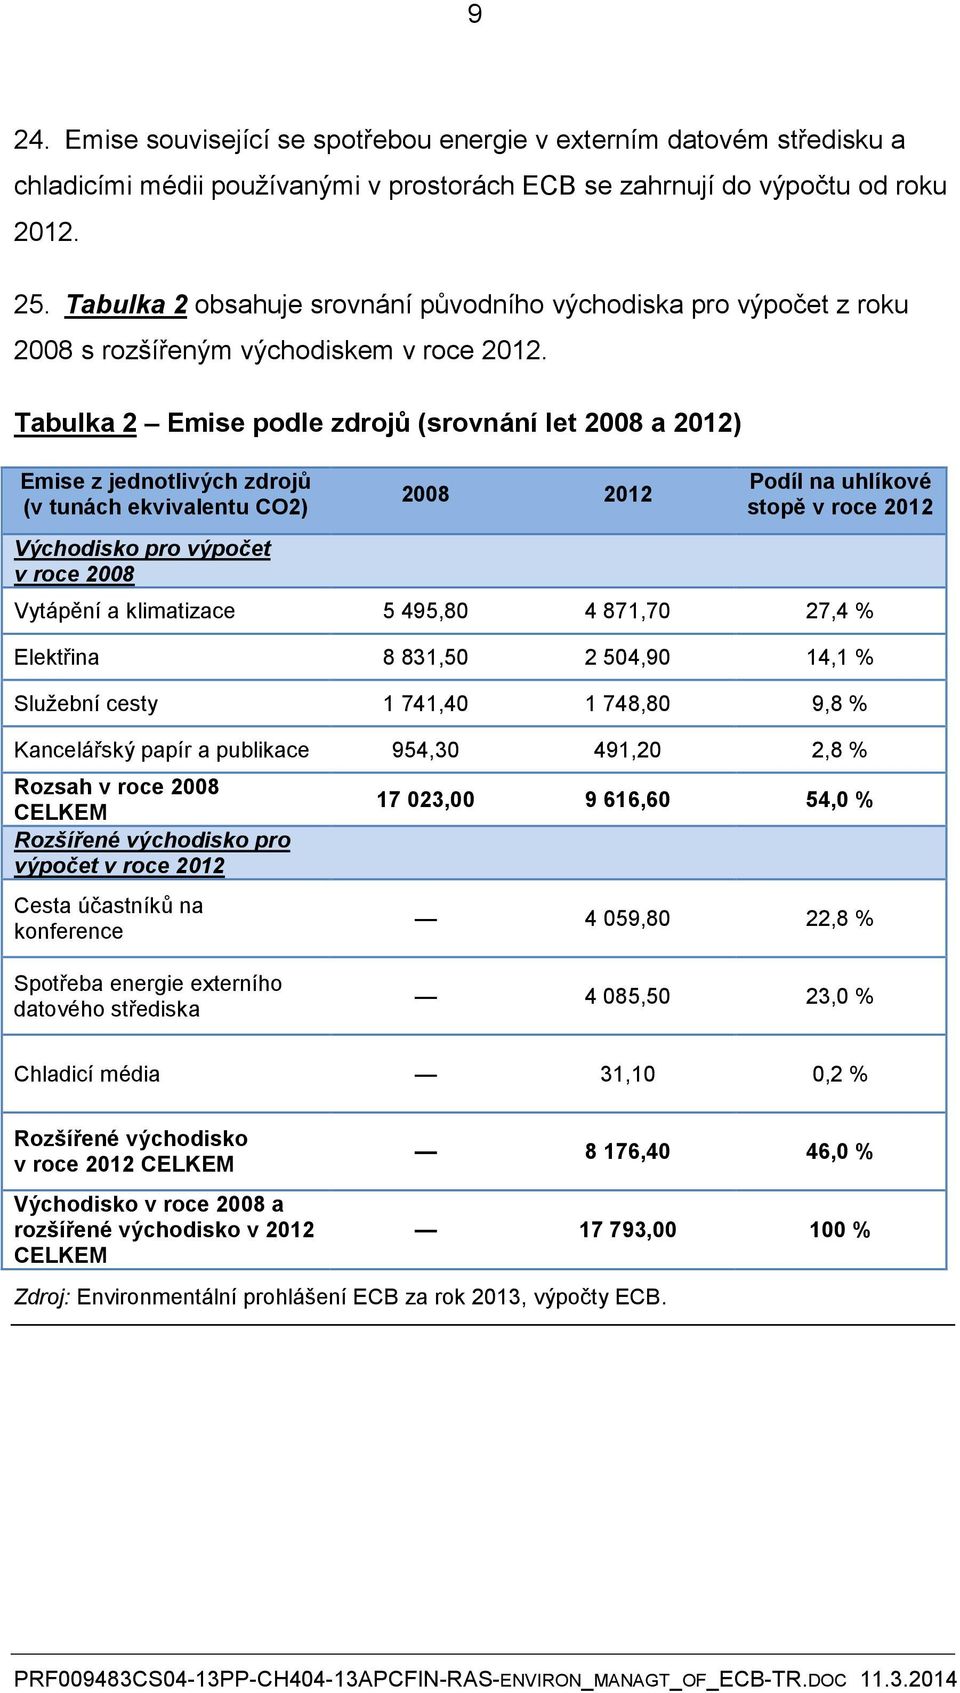 Tabulka 2 Emise podle zdrojů (srovnání let 2008 a 2012) Emise z jednotlivých zdrojů (v tunách ekvivalentu CO2) 2008 2012 Podíl na uhlíkové stopě v roce 2012 Východisko pro výpočet v roce 2008